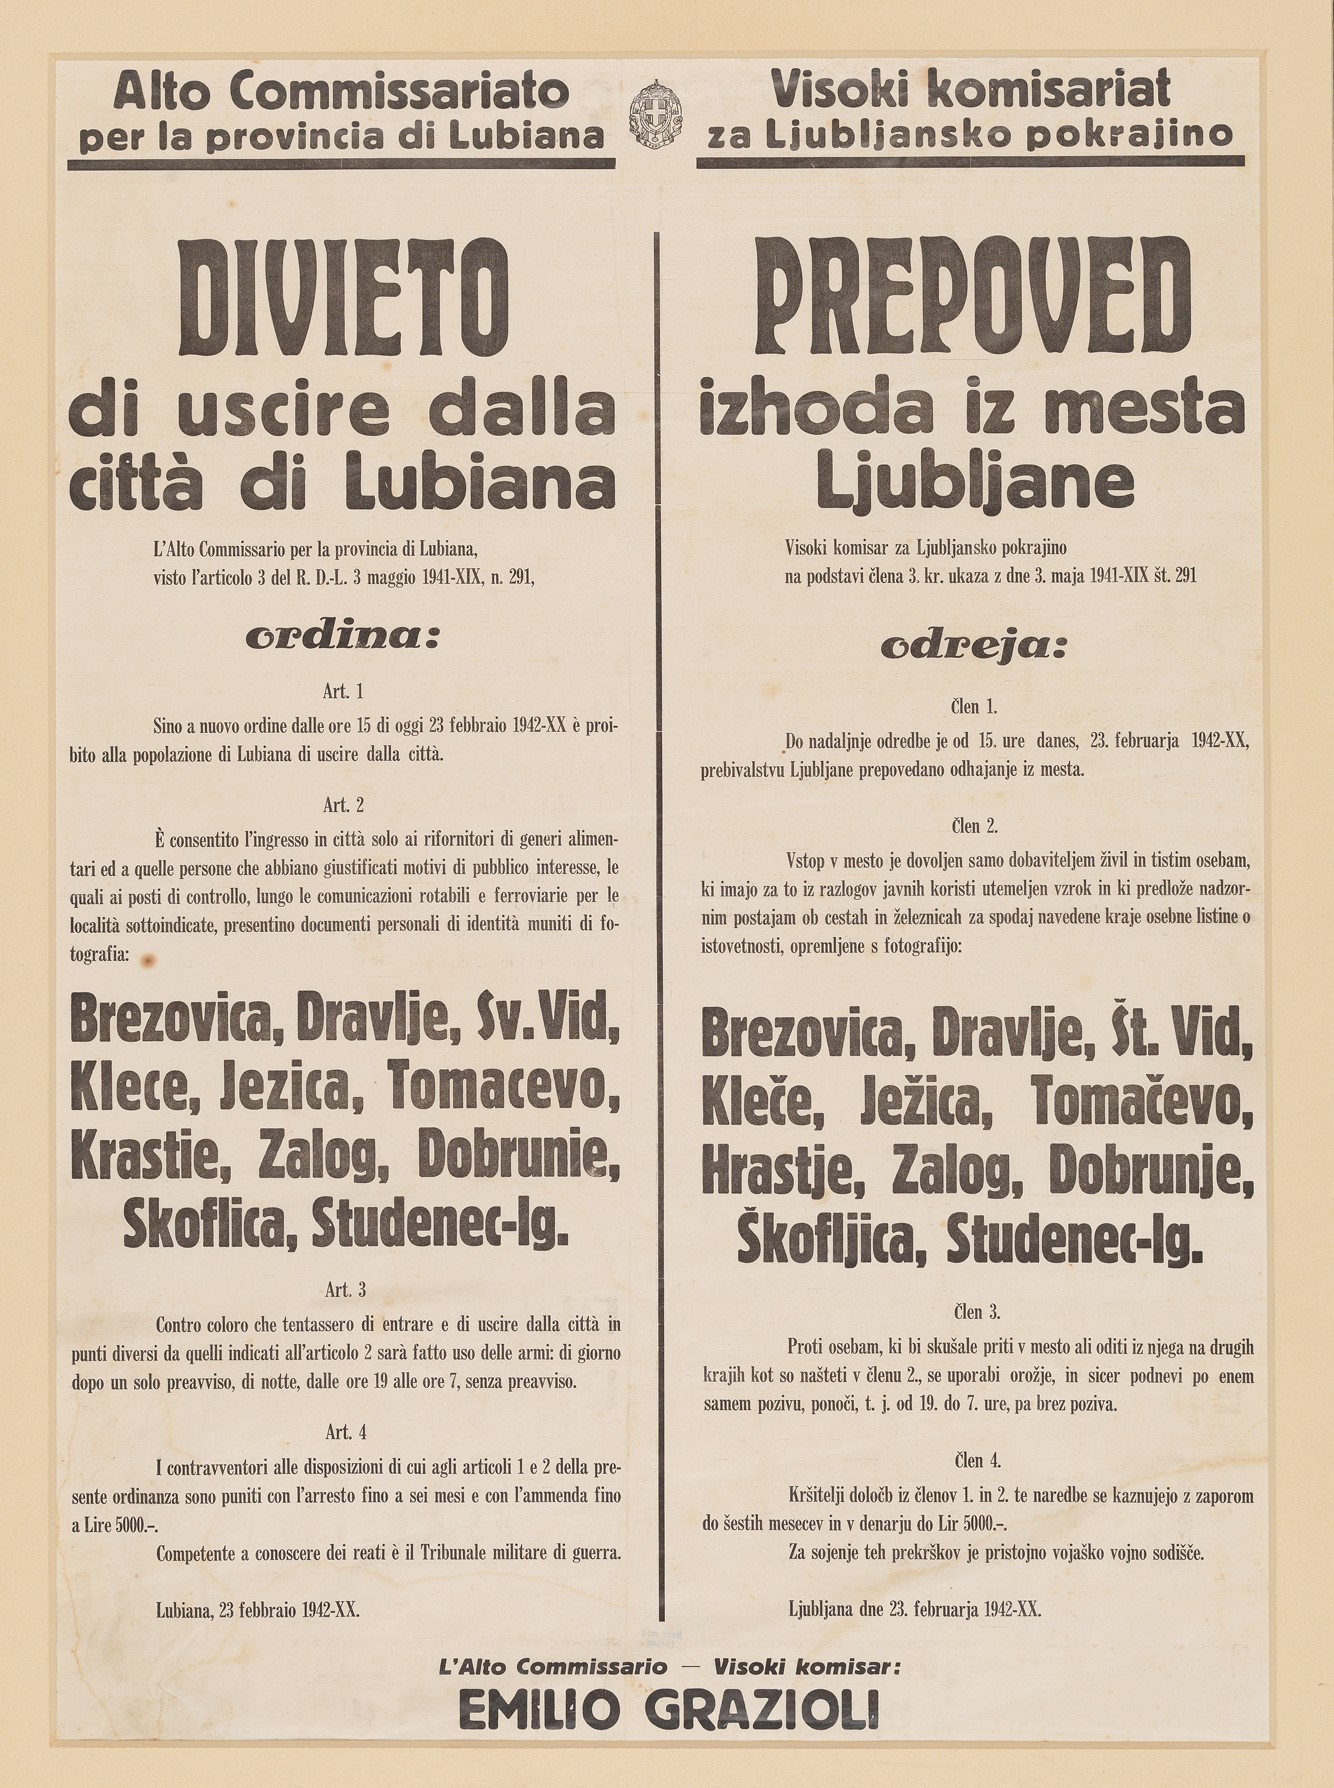 Prepoved Ljubljana